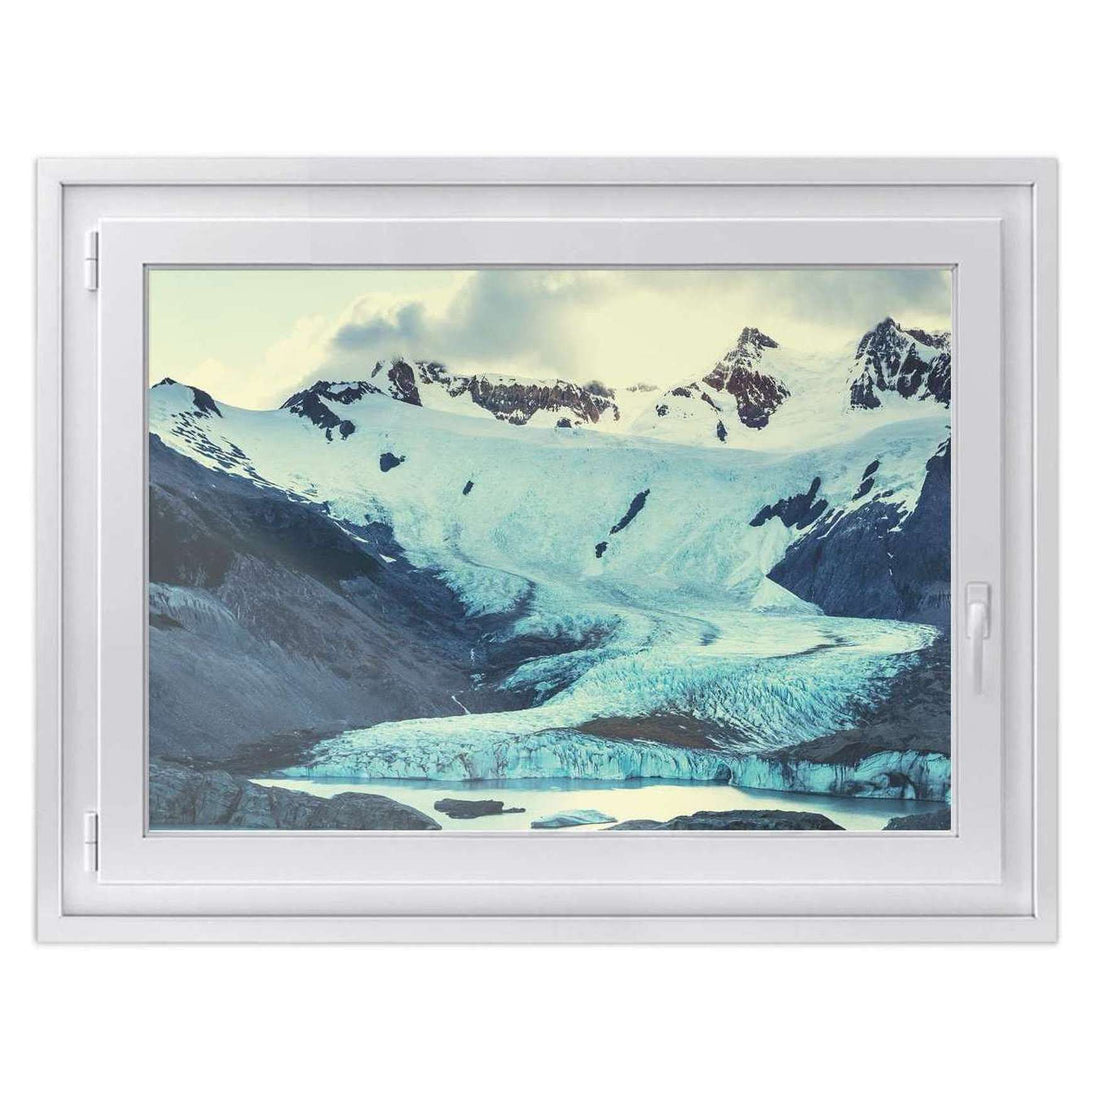 Fensterfolie [quer] -Patagonia- Größe: 100x70 cm